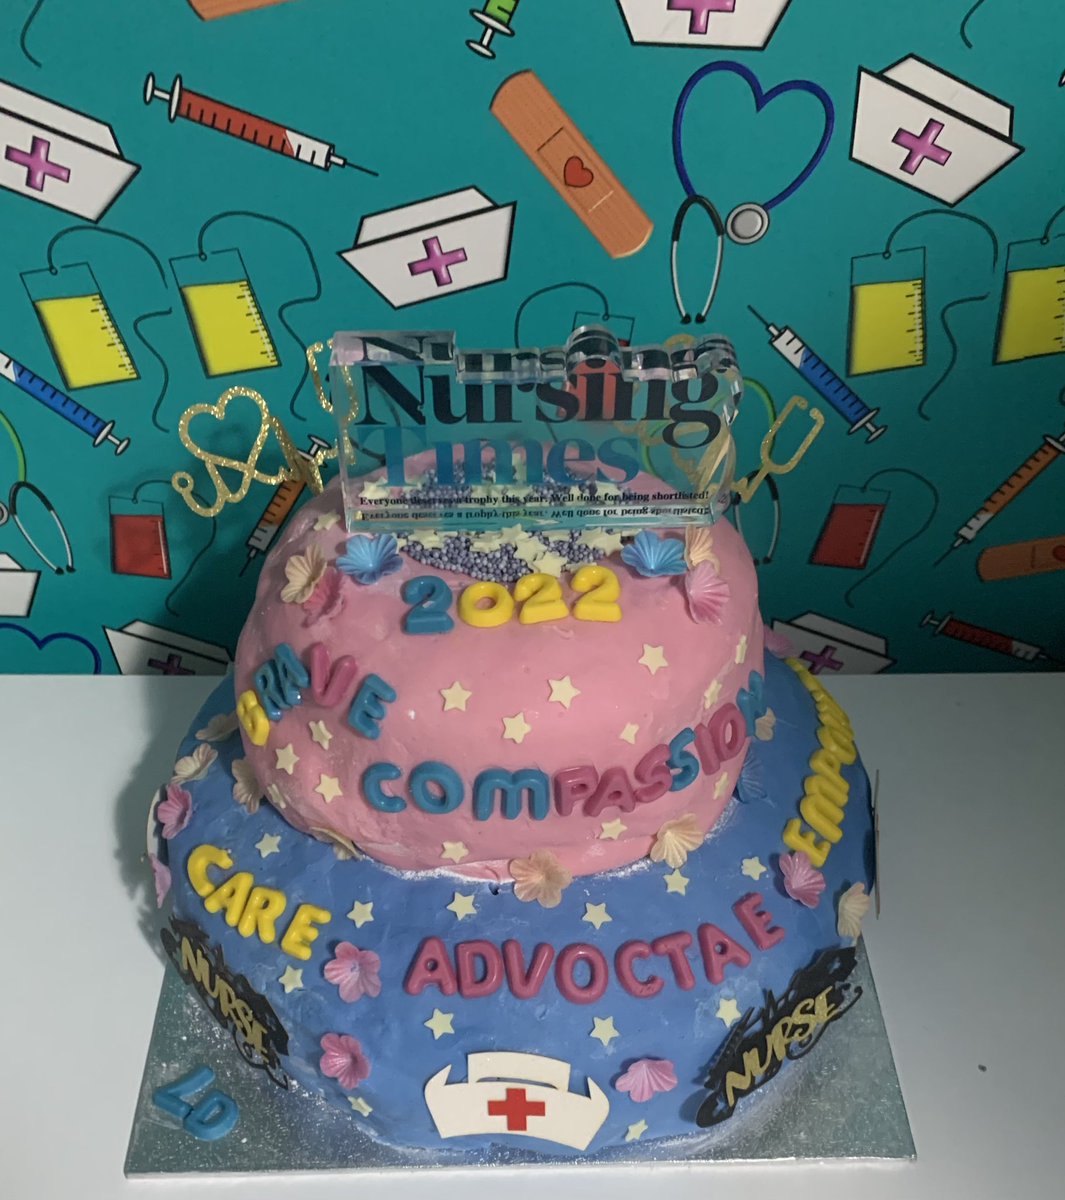 My #SNTAbake a cake 
#SNTA @NursingTimes